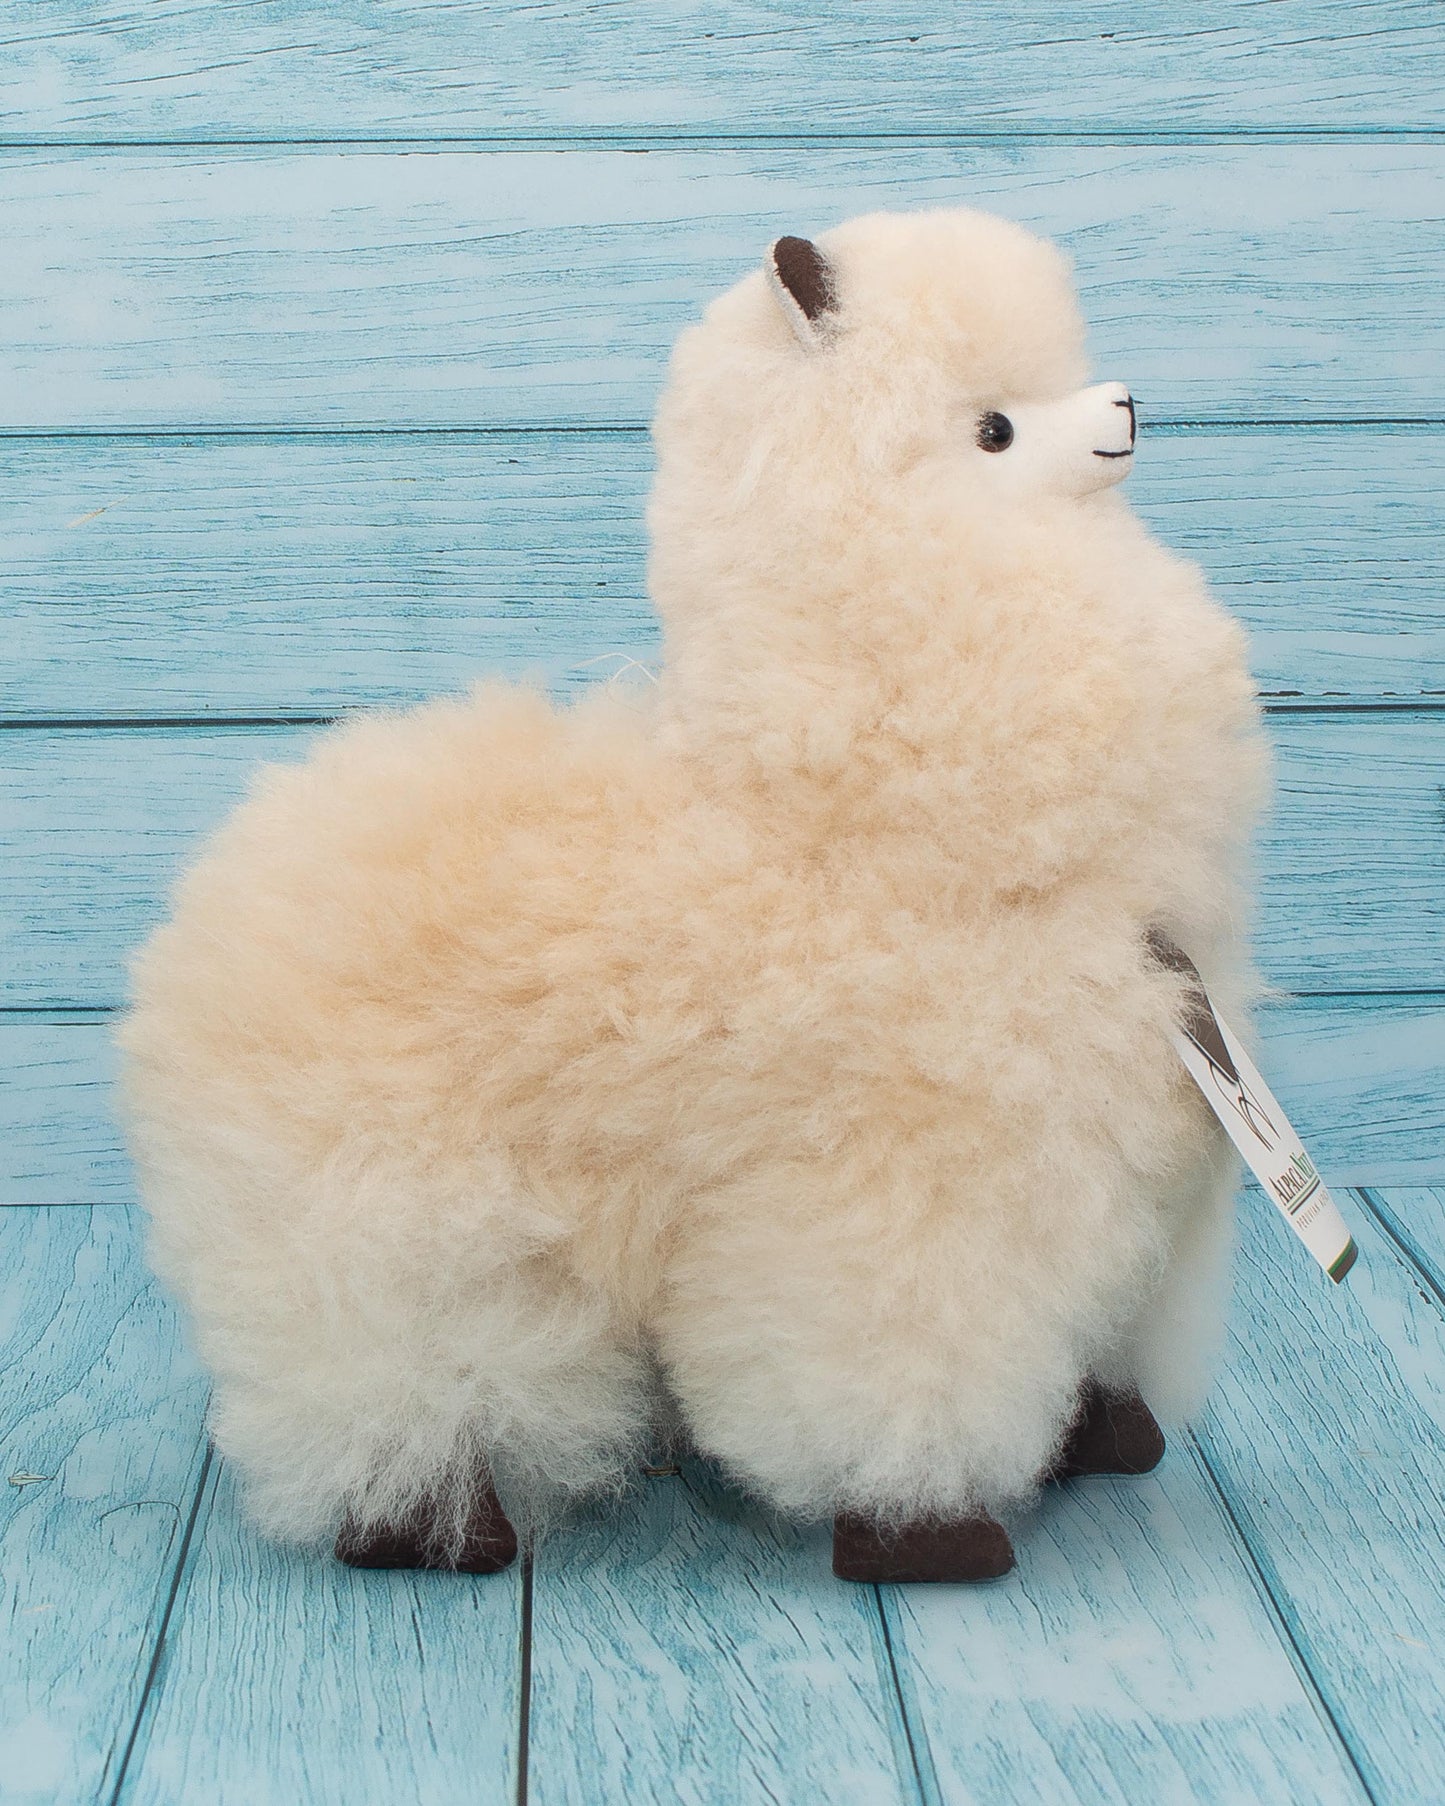 Soft alpaca stuffed animal. Beige, 9 inches. Fluffy and cuddly